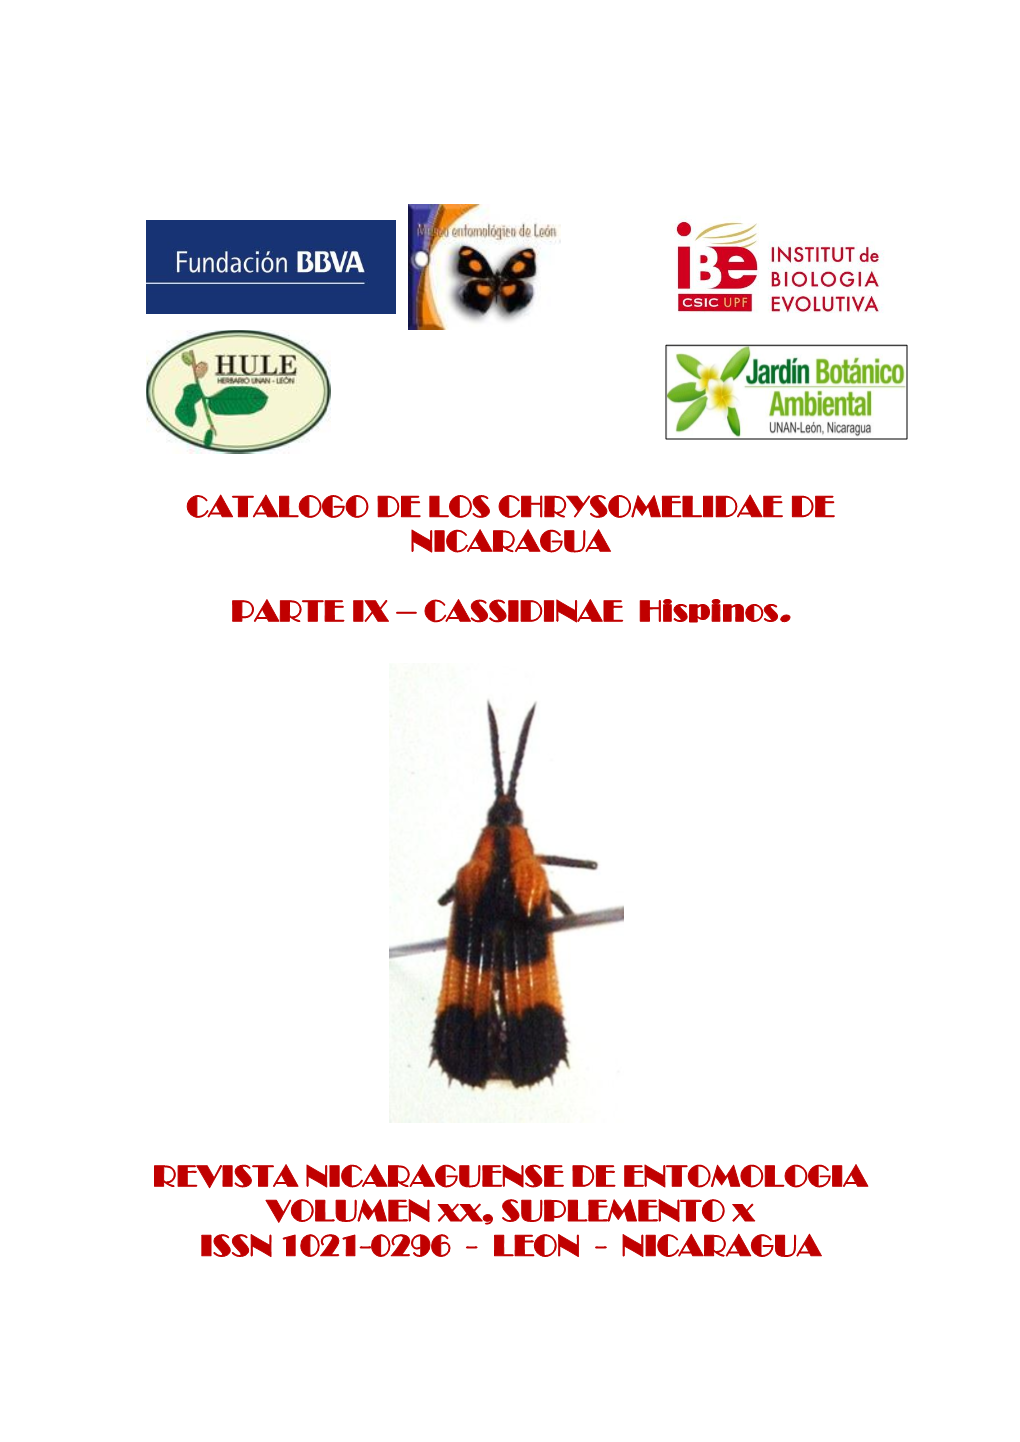 Revista Nicaraguense De Entomologia, 76(Ix), 2016